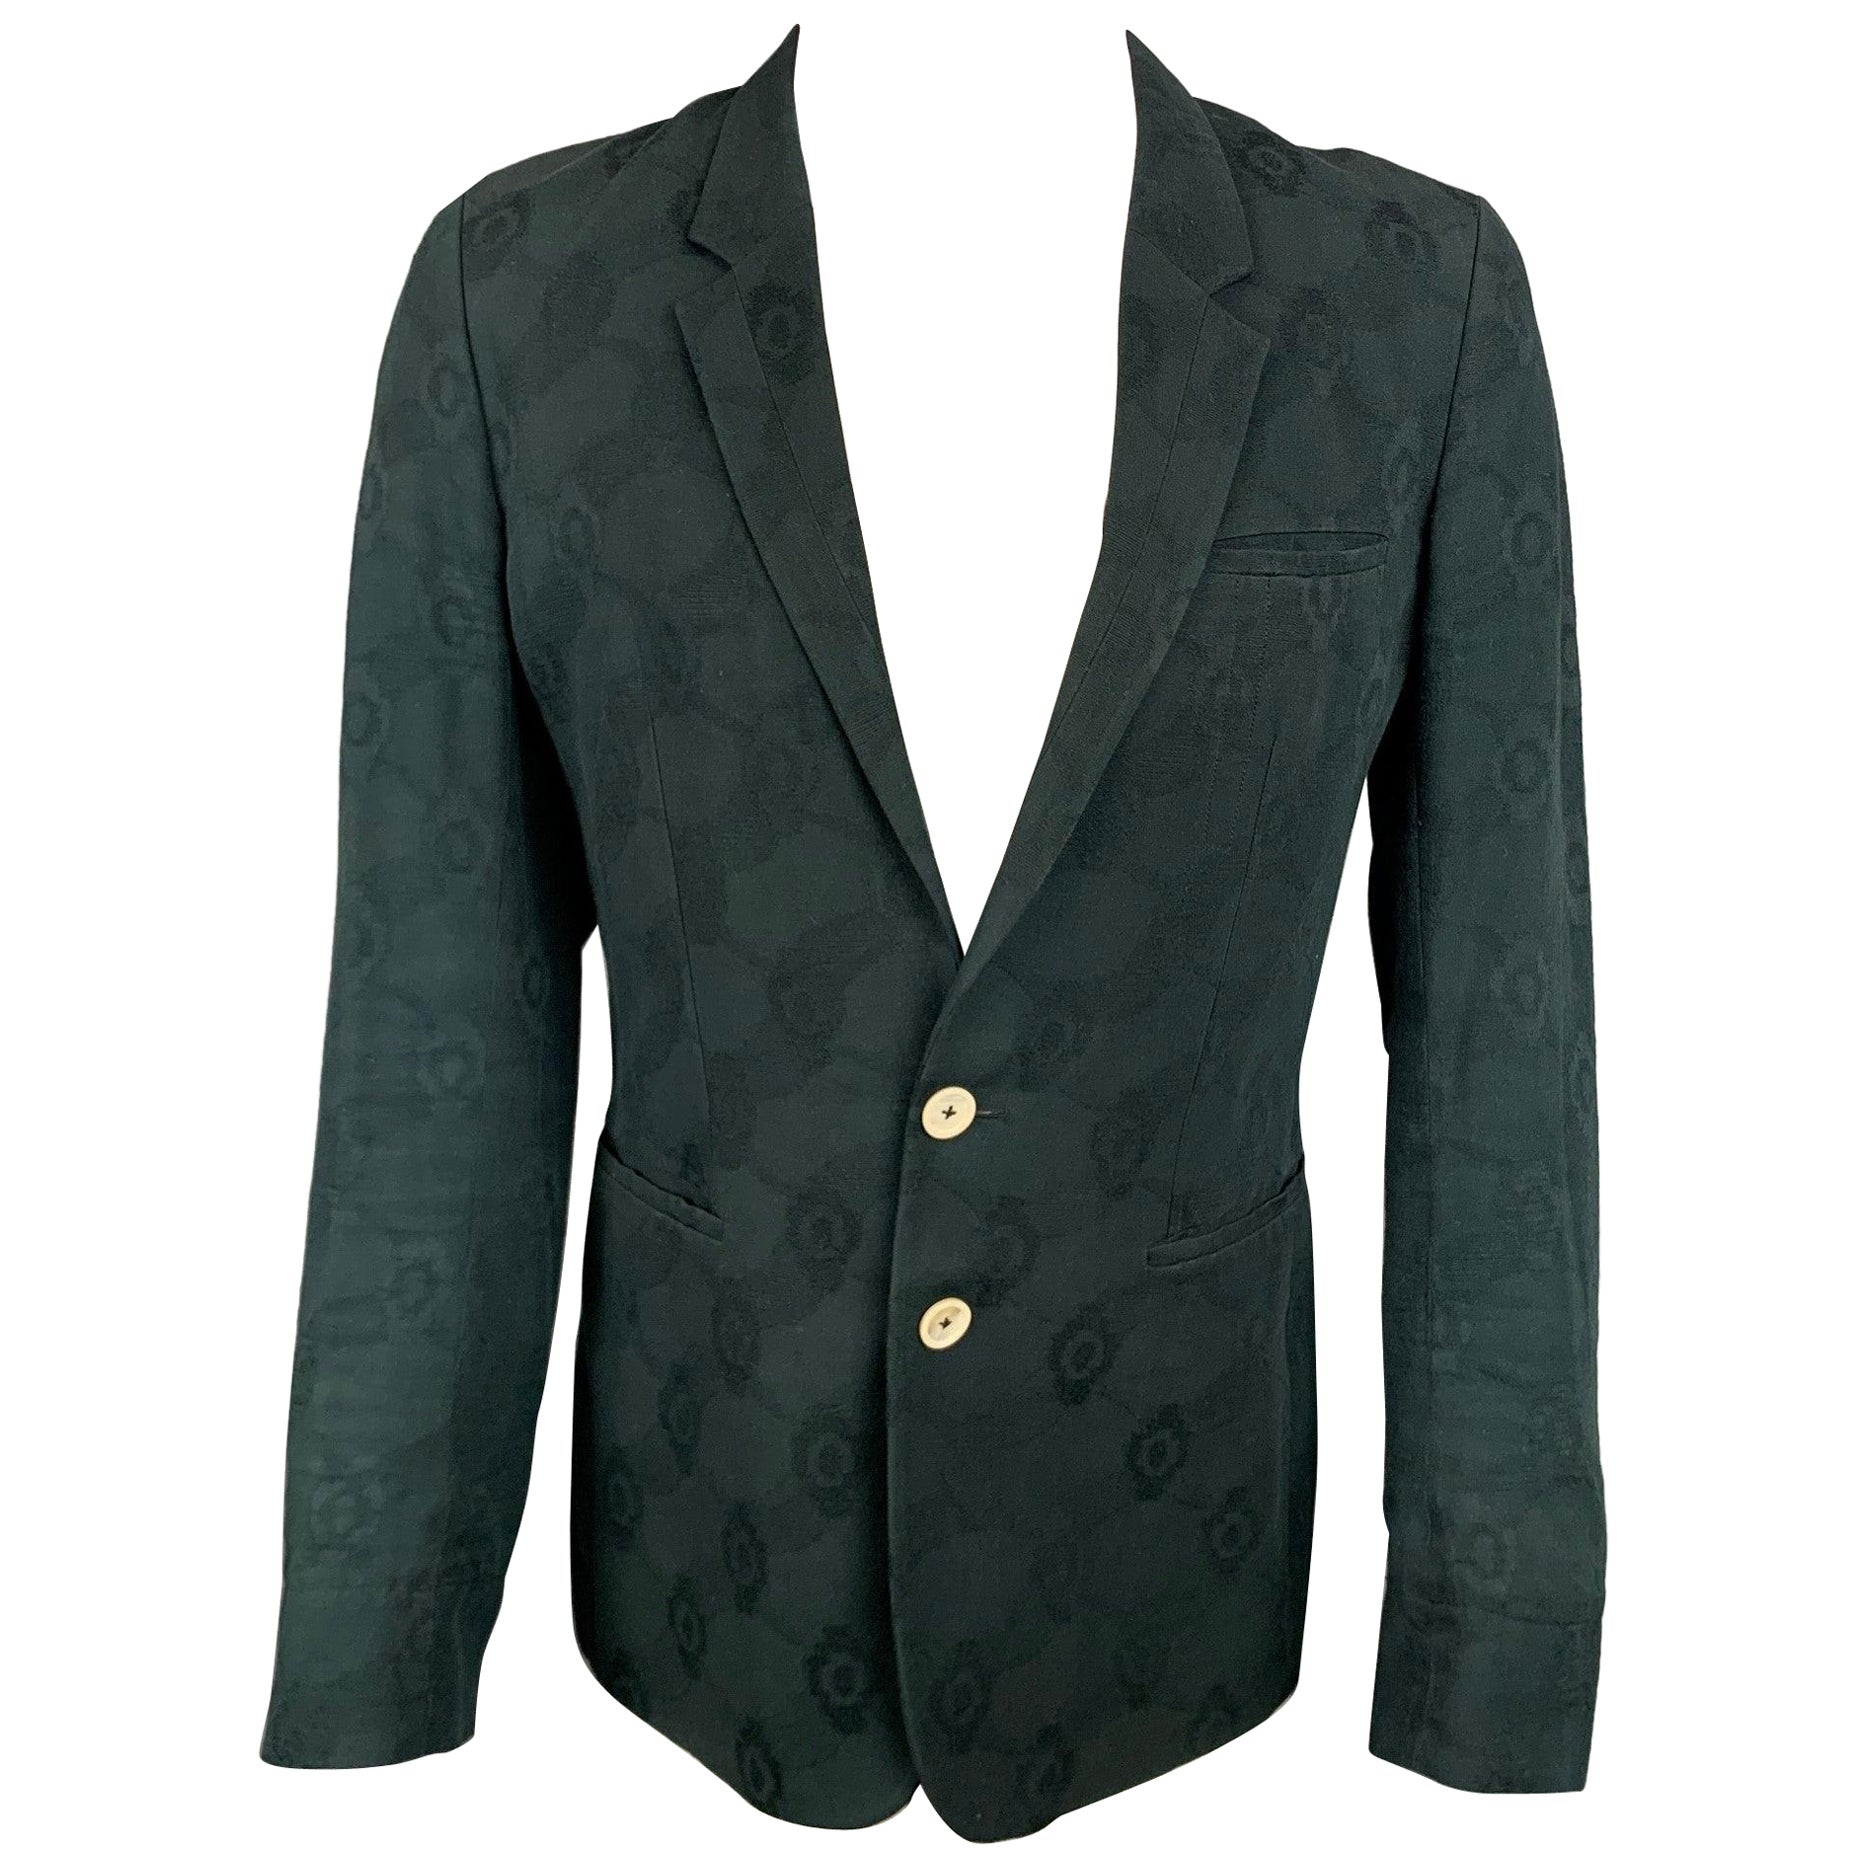 ANN DEMEULEMEESTER Size S Black Jacquard Cotton Notch Lapel Sport Coat For Sale